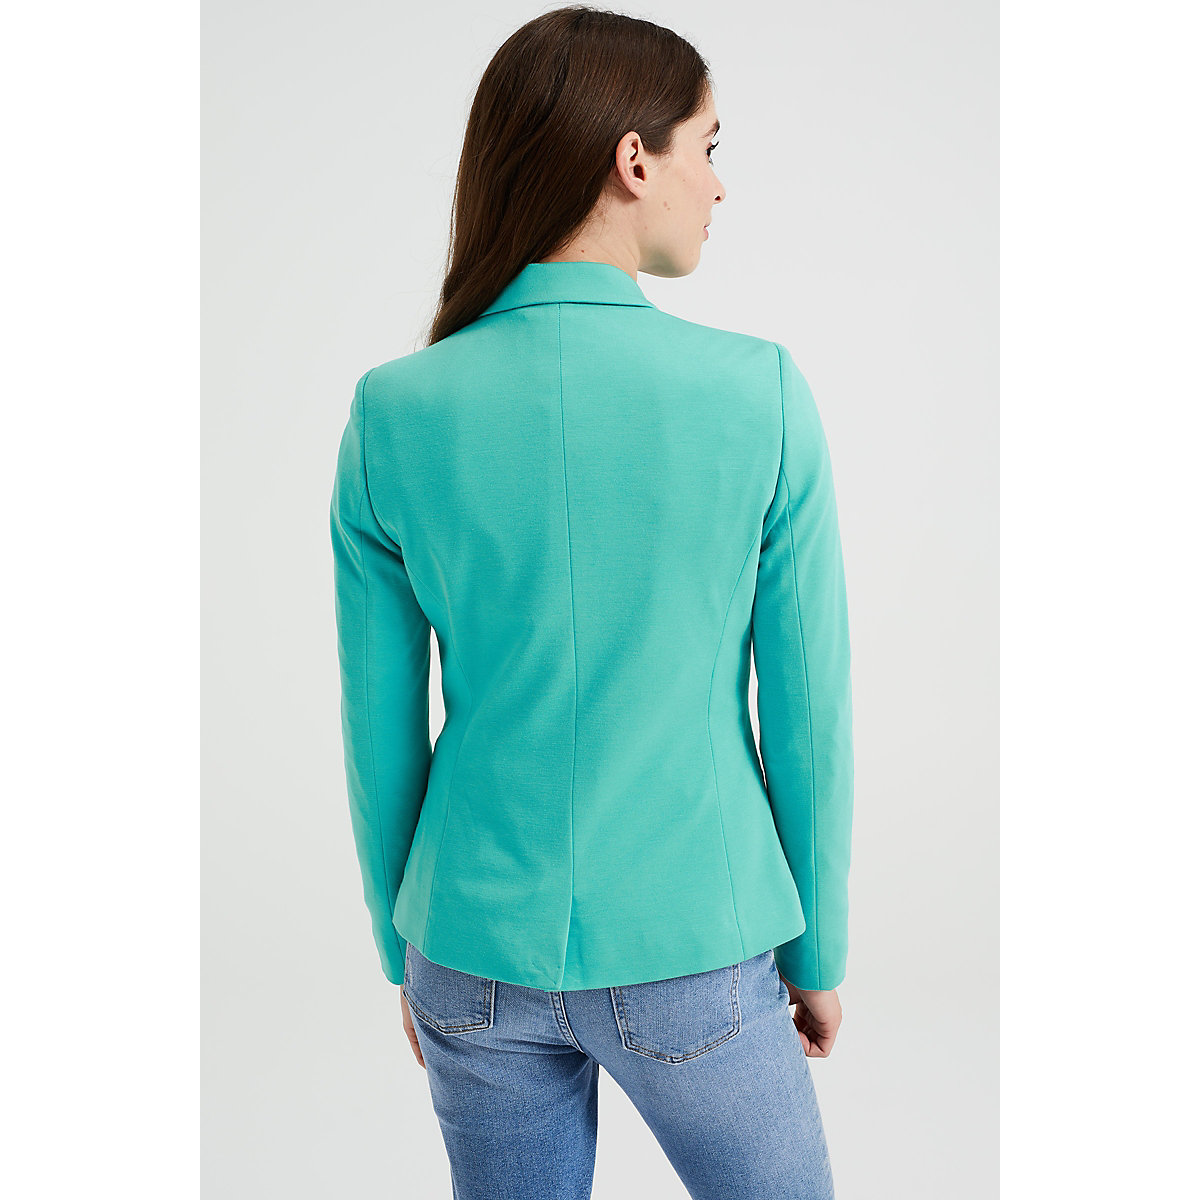 WE Fashion Dames getailleerde jersey stretch blazer Blazer grün PR9387